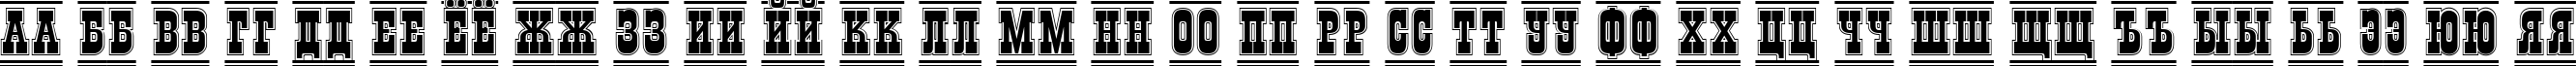 Пример написания русского алфавита шрифтом a_GildiaTitulDcFrGr Bold